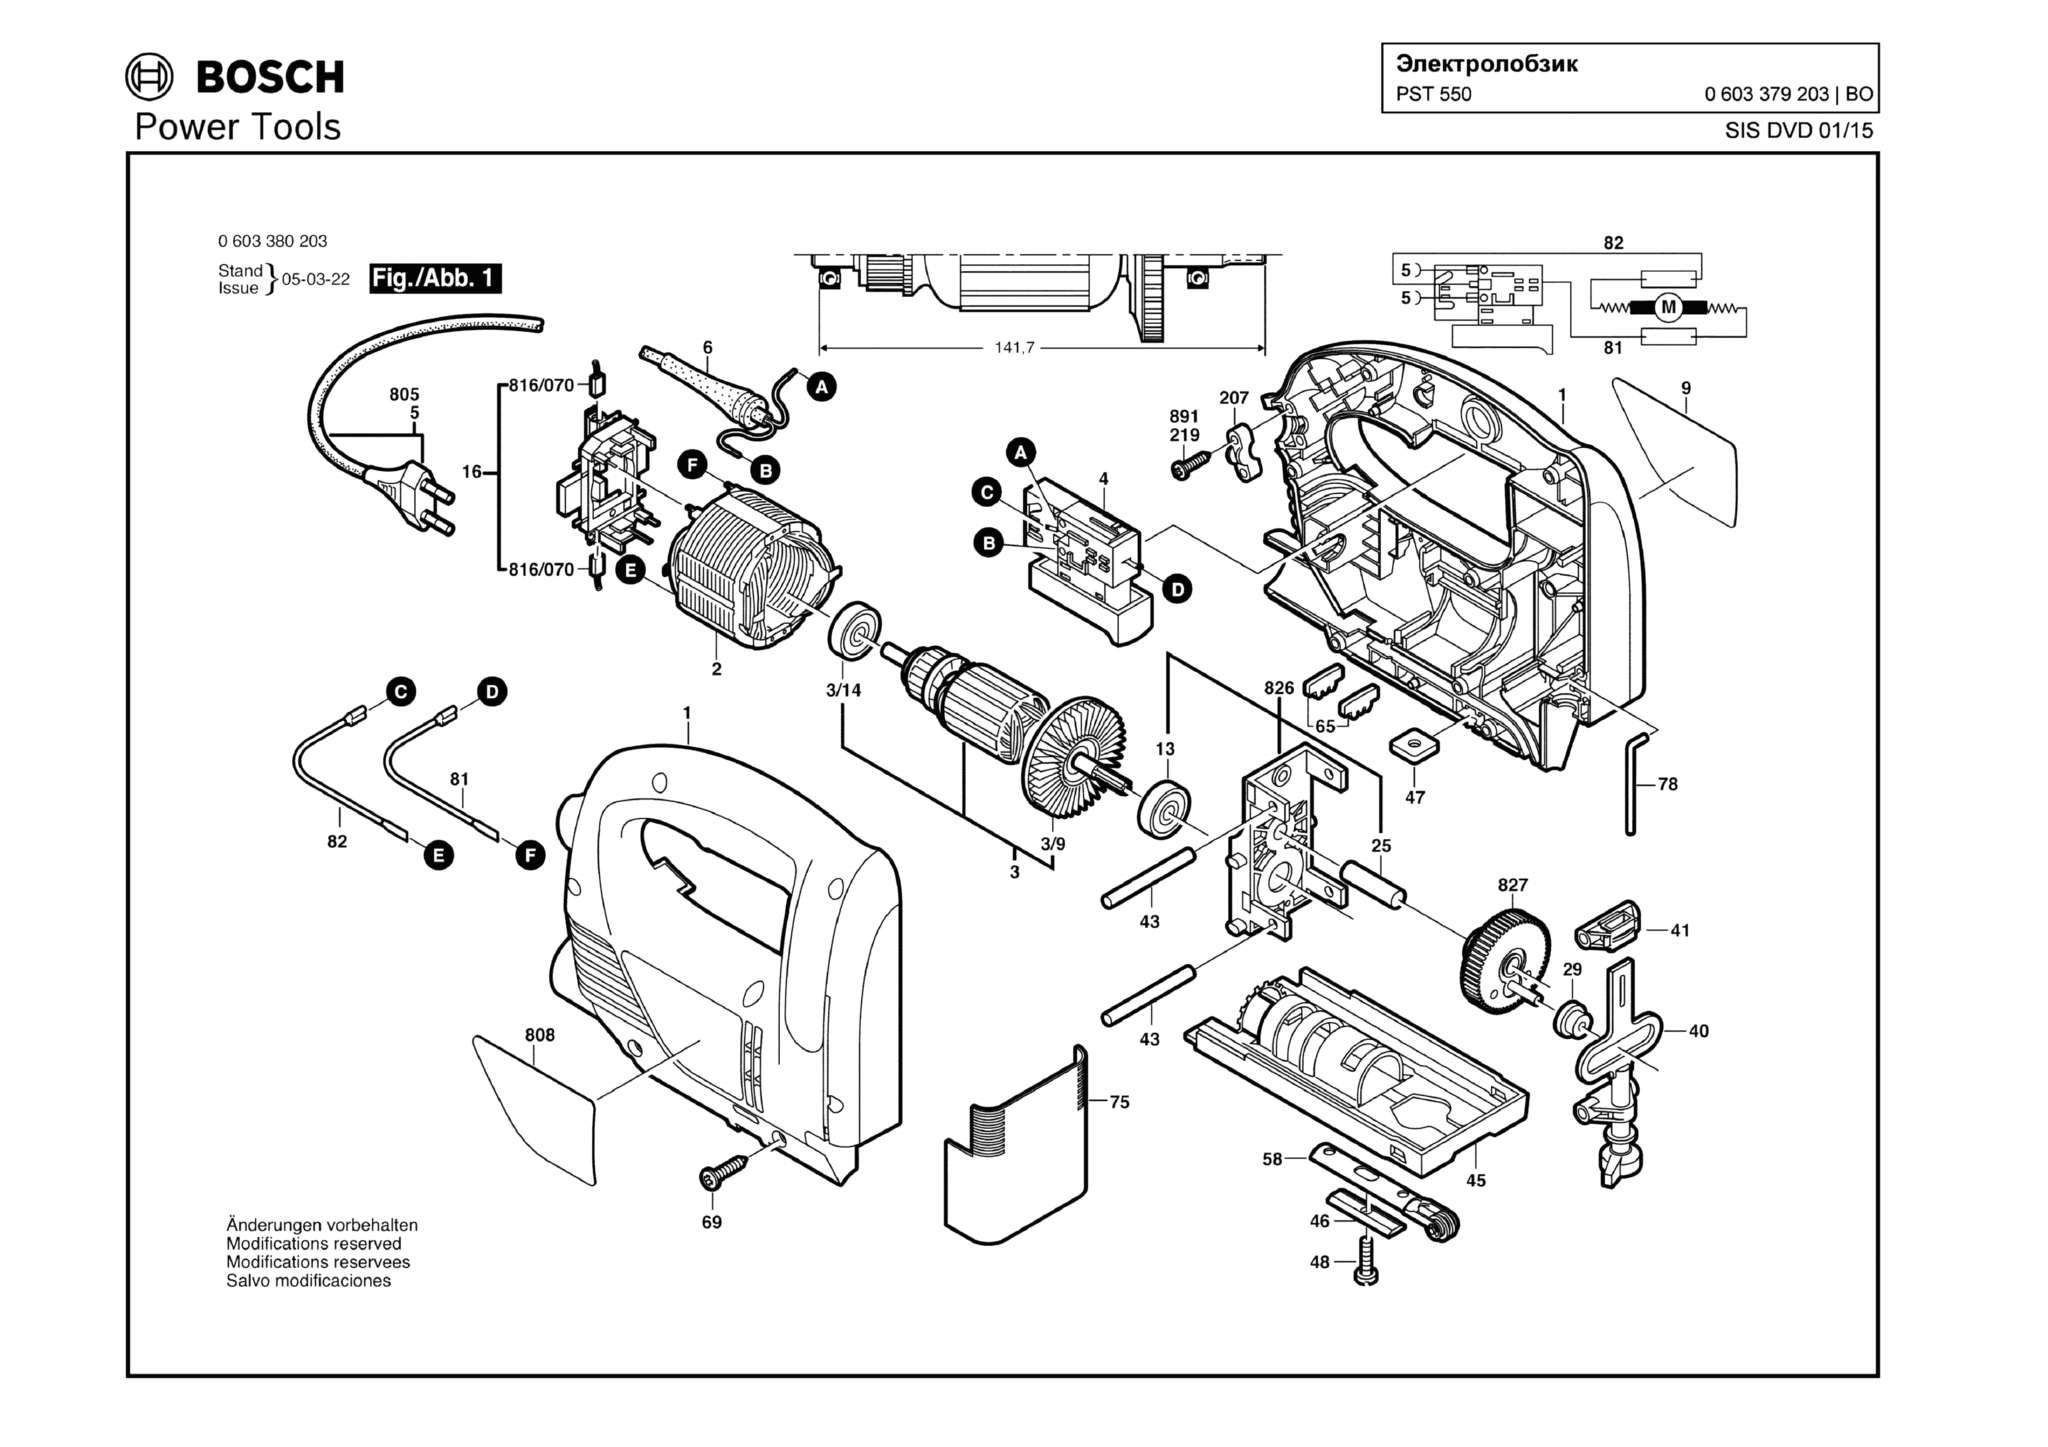 Запчасти, схема и деталировка Bosch PST 550 (ТИП 0603379203)